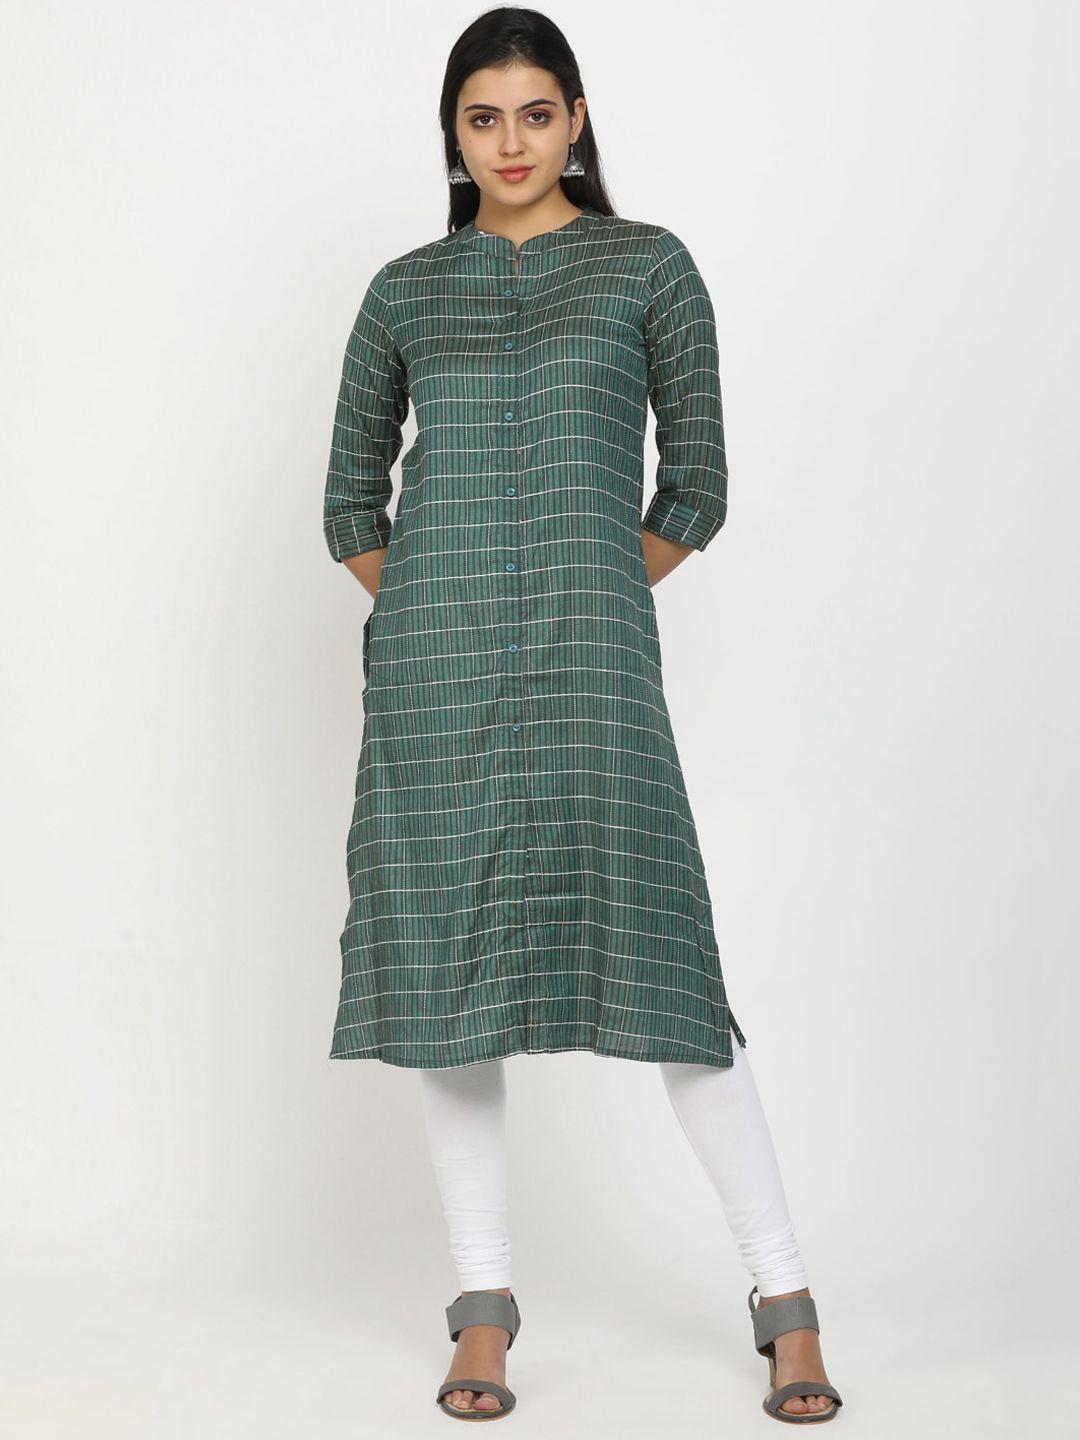 v-mart women olive green striped cotton kurta